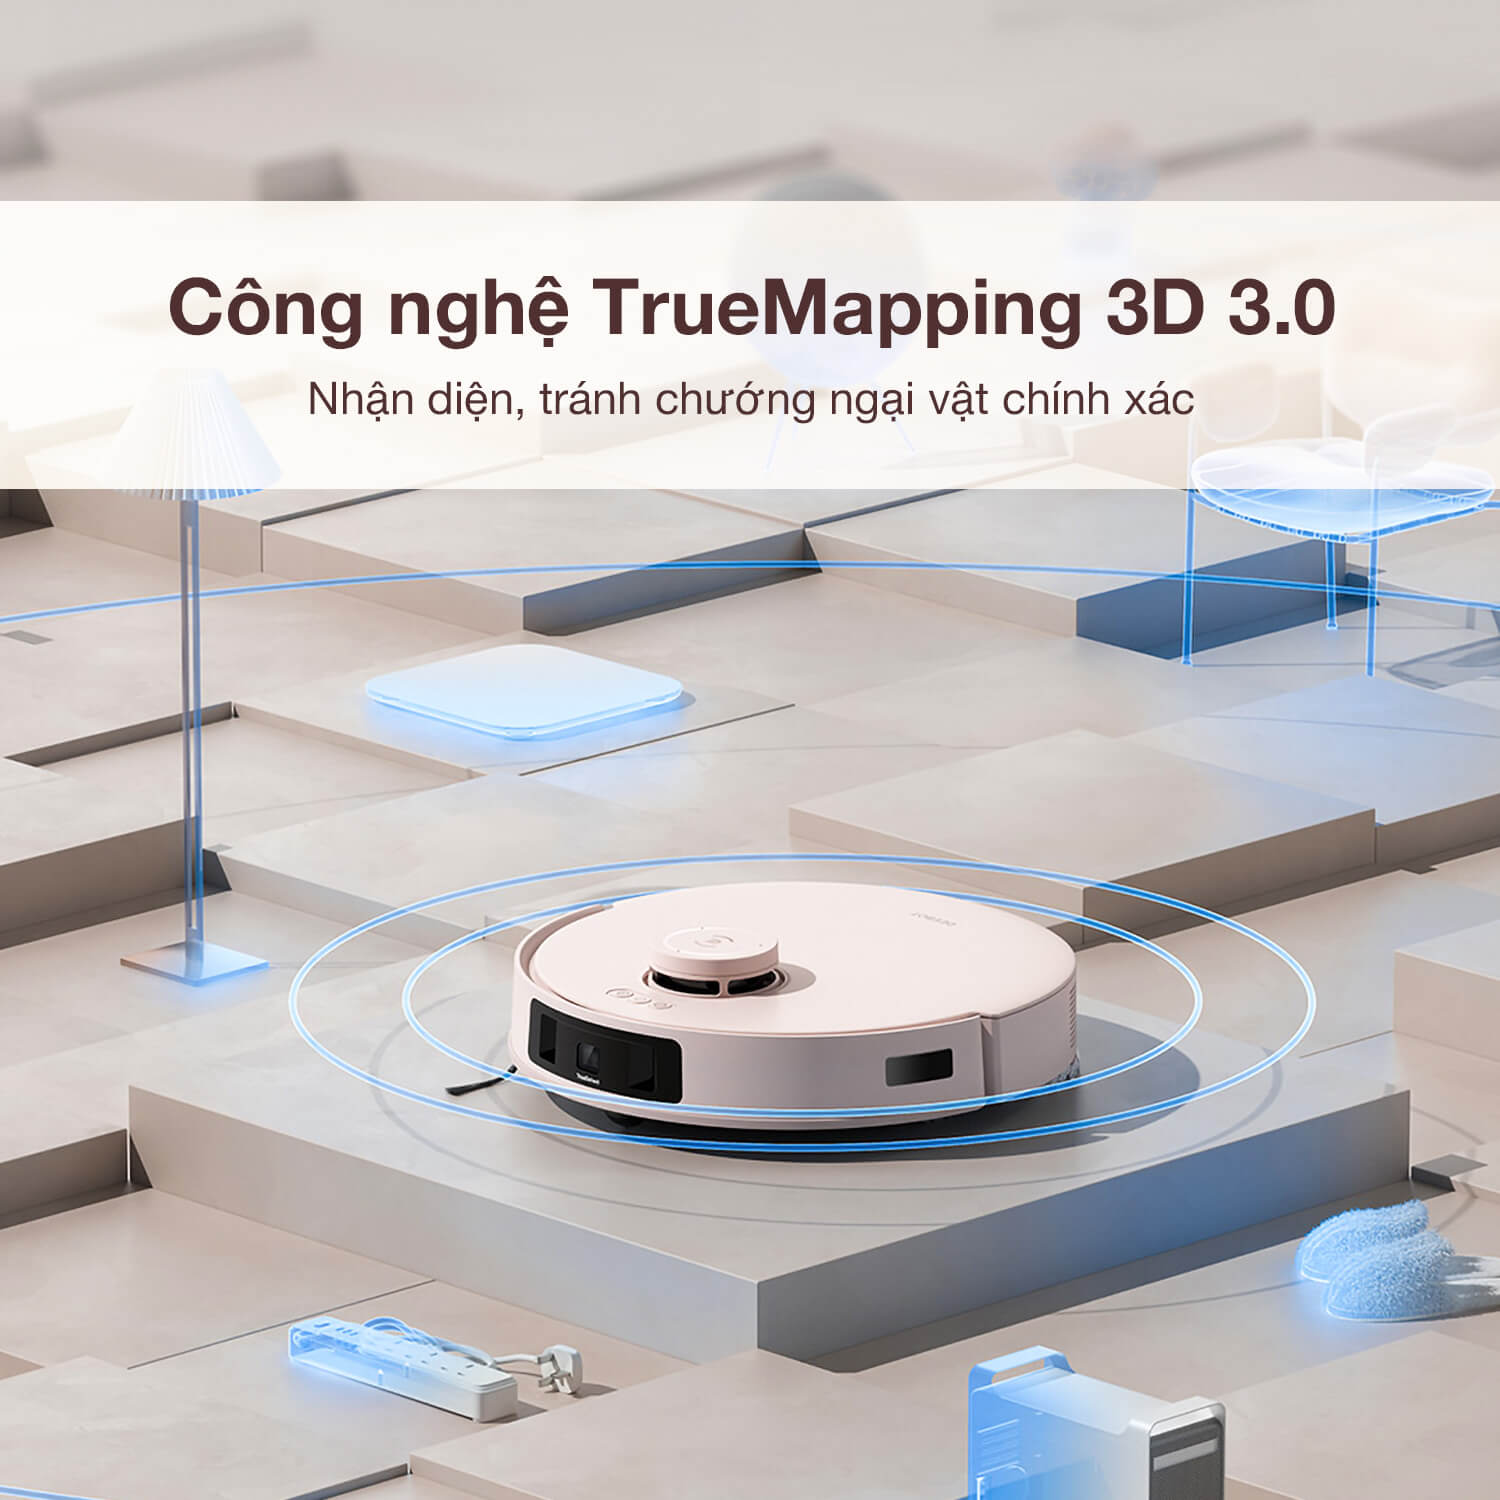 Tạo bản đồ nhanh và tránh chướng ngại vật TrueMapping 3D 3.0 